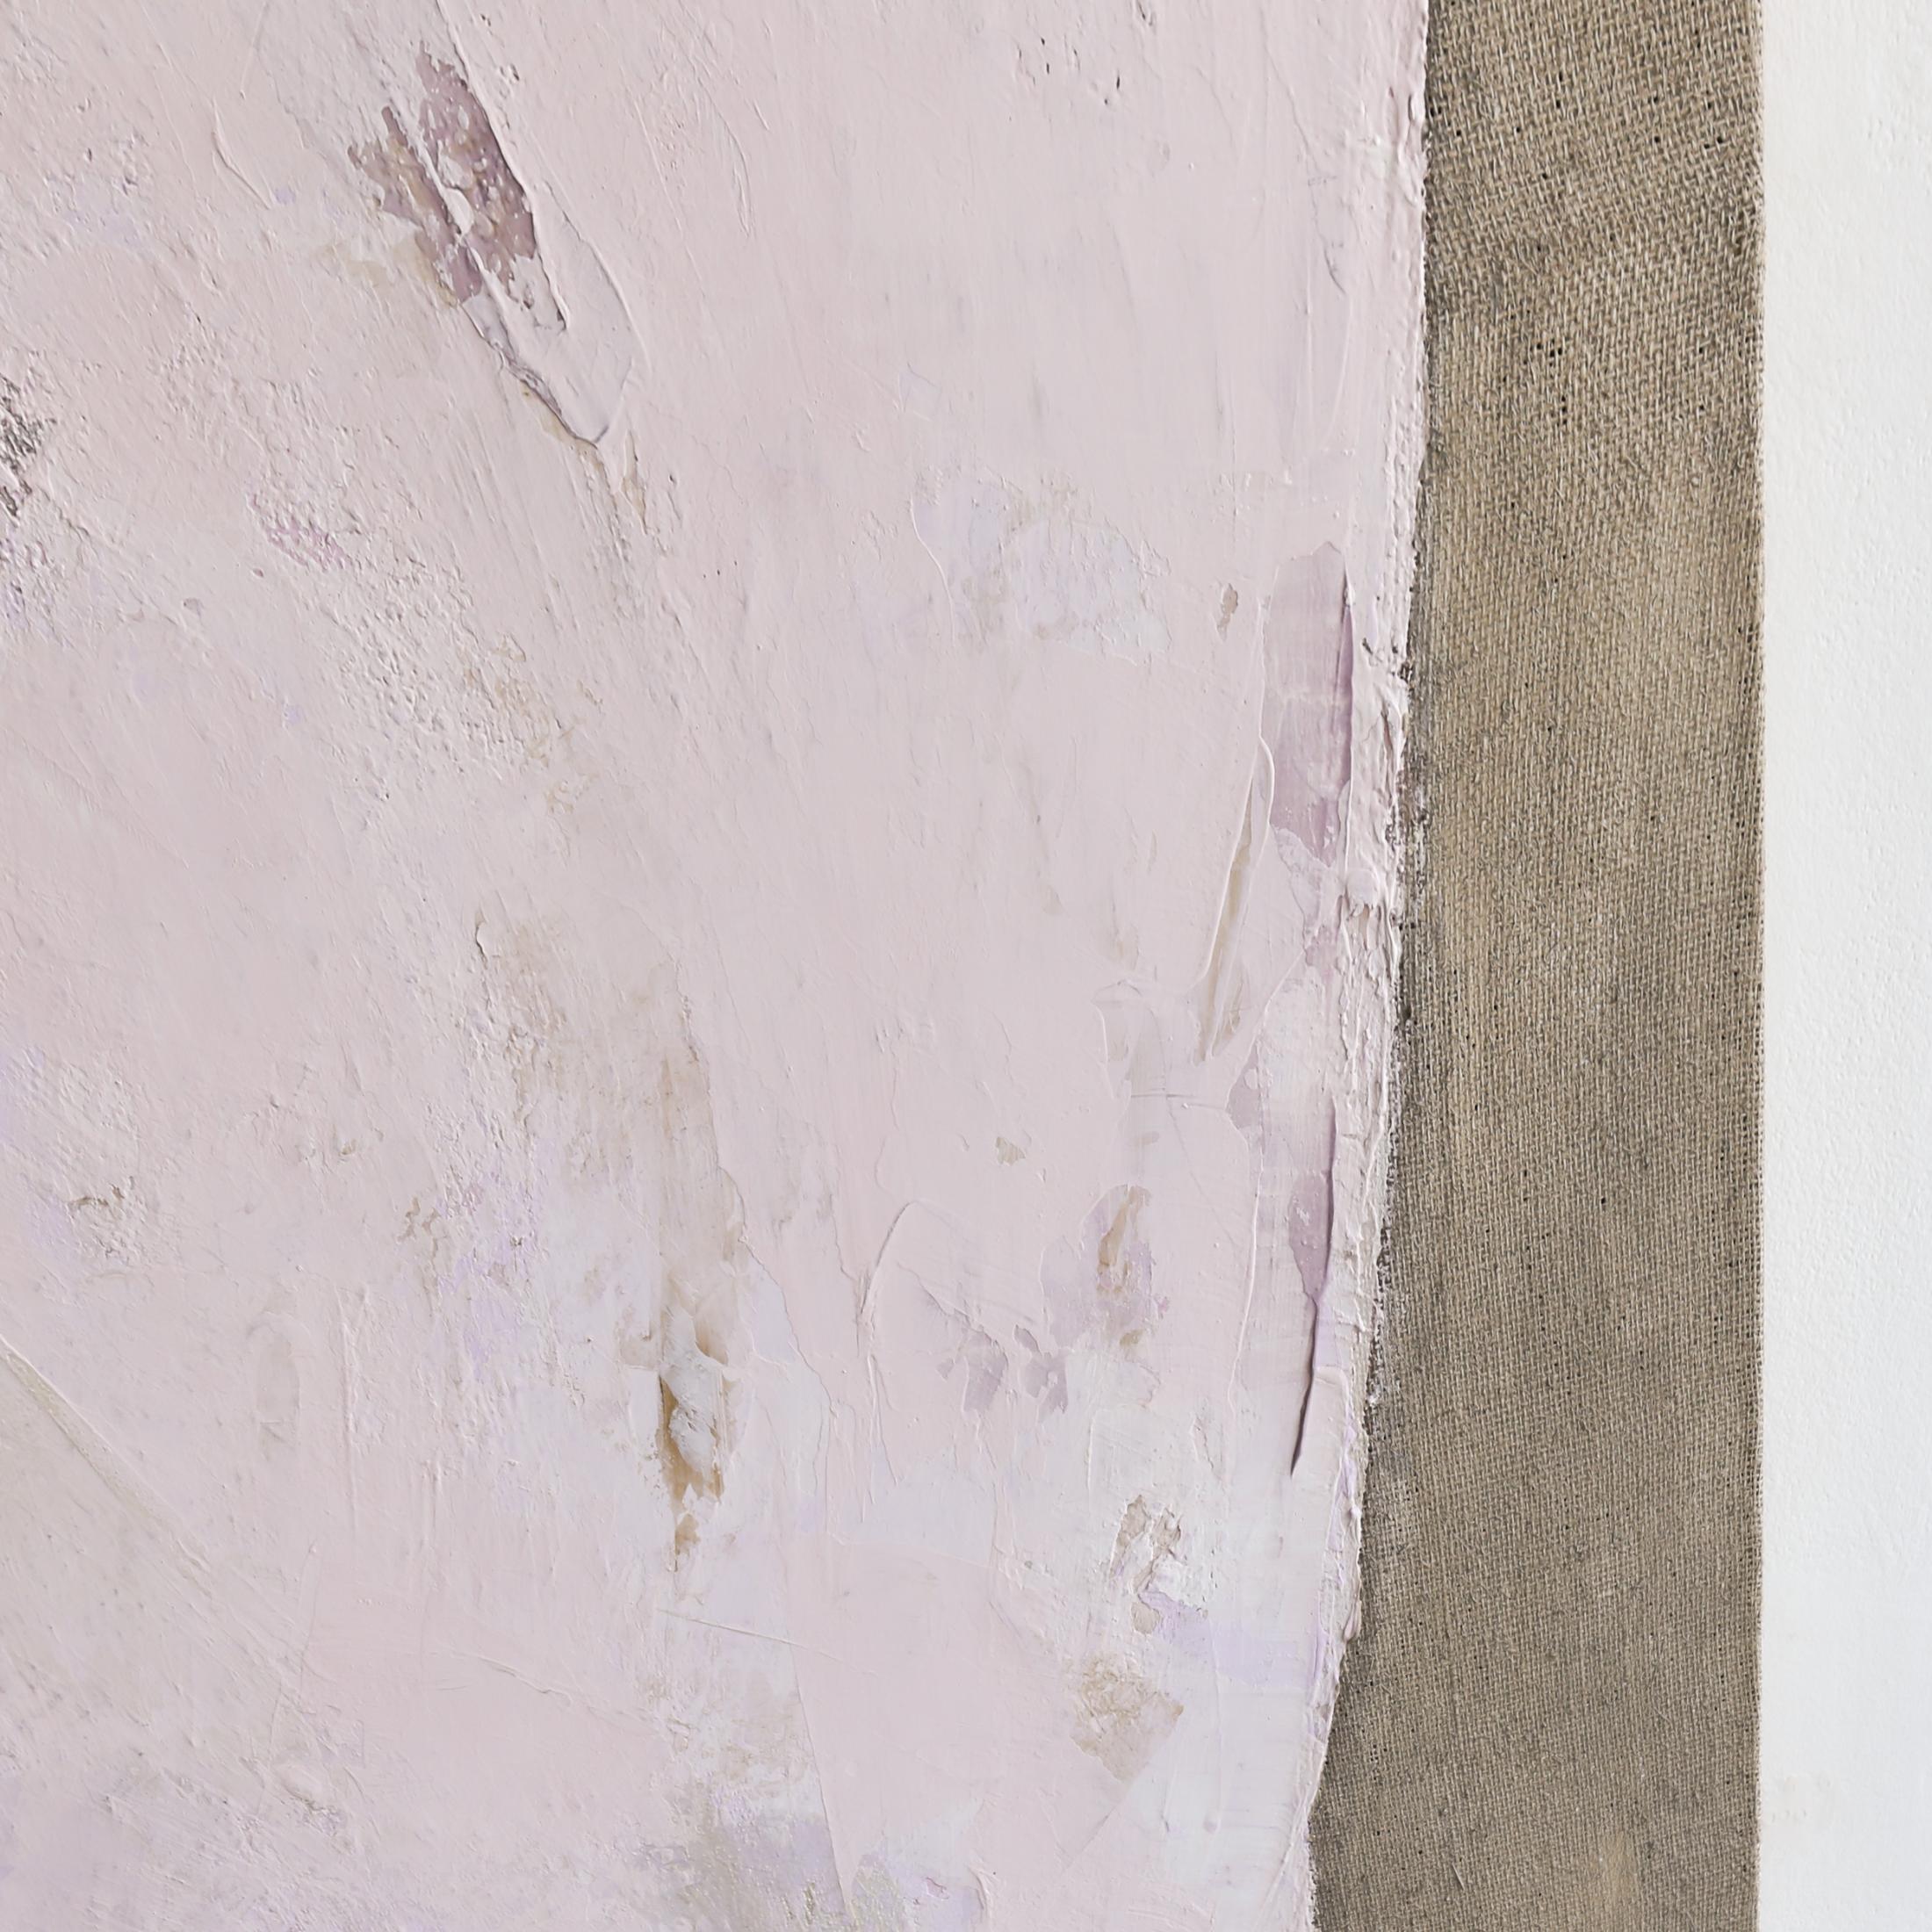 Dieses abstrakte zeitgenössische Werk mit dem Titel Rosa Chiaro von Kim Fonder verwendet  Gips, organisches Pigment und venezianischer Gips auf Sackleinen mit den Maßen 80 x 80 Preis ist $9700.00

Kim Fonder liebt Textur und Berührung. Ihre Gemälde